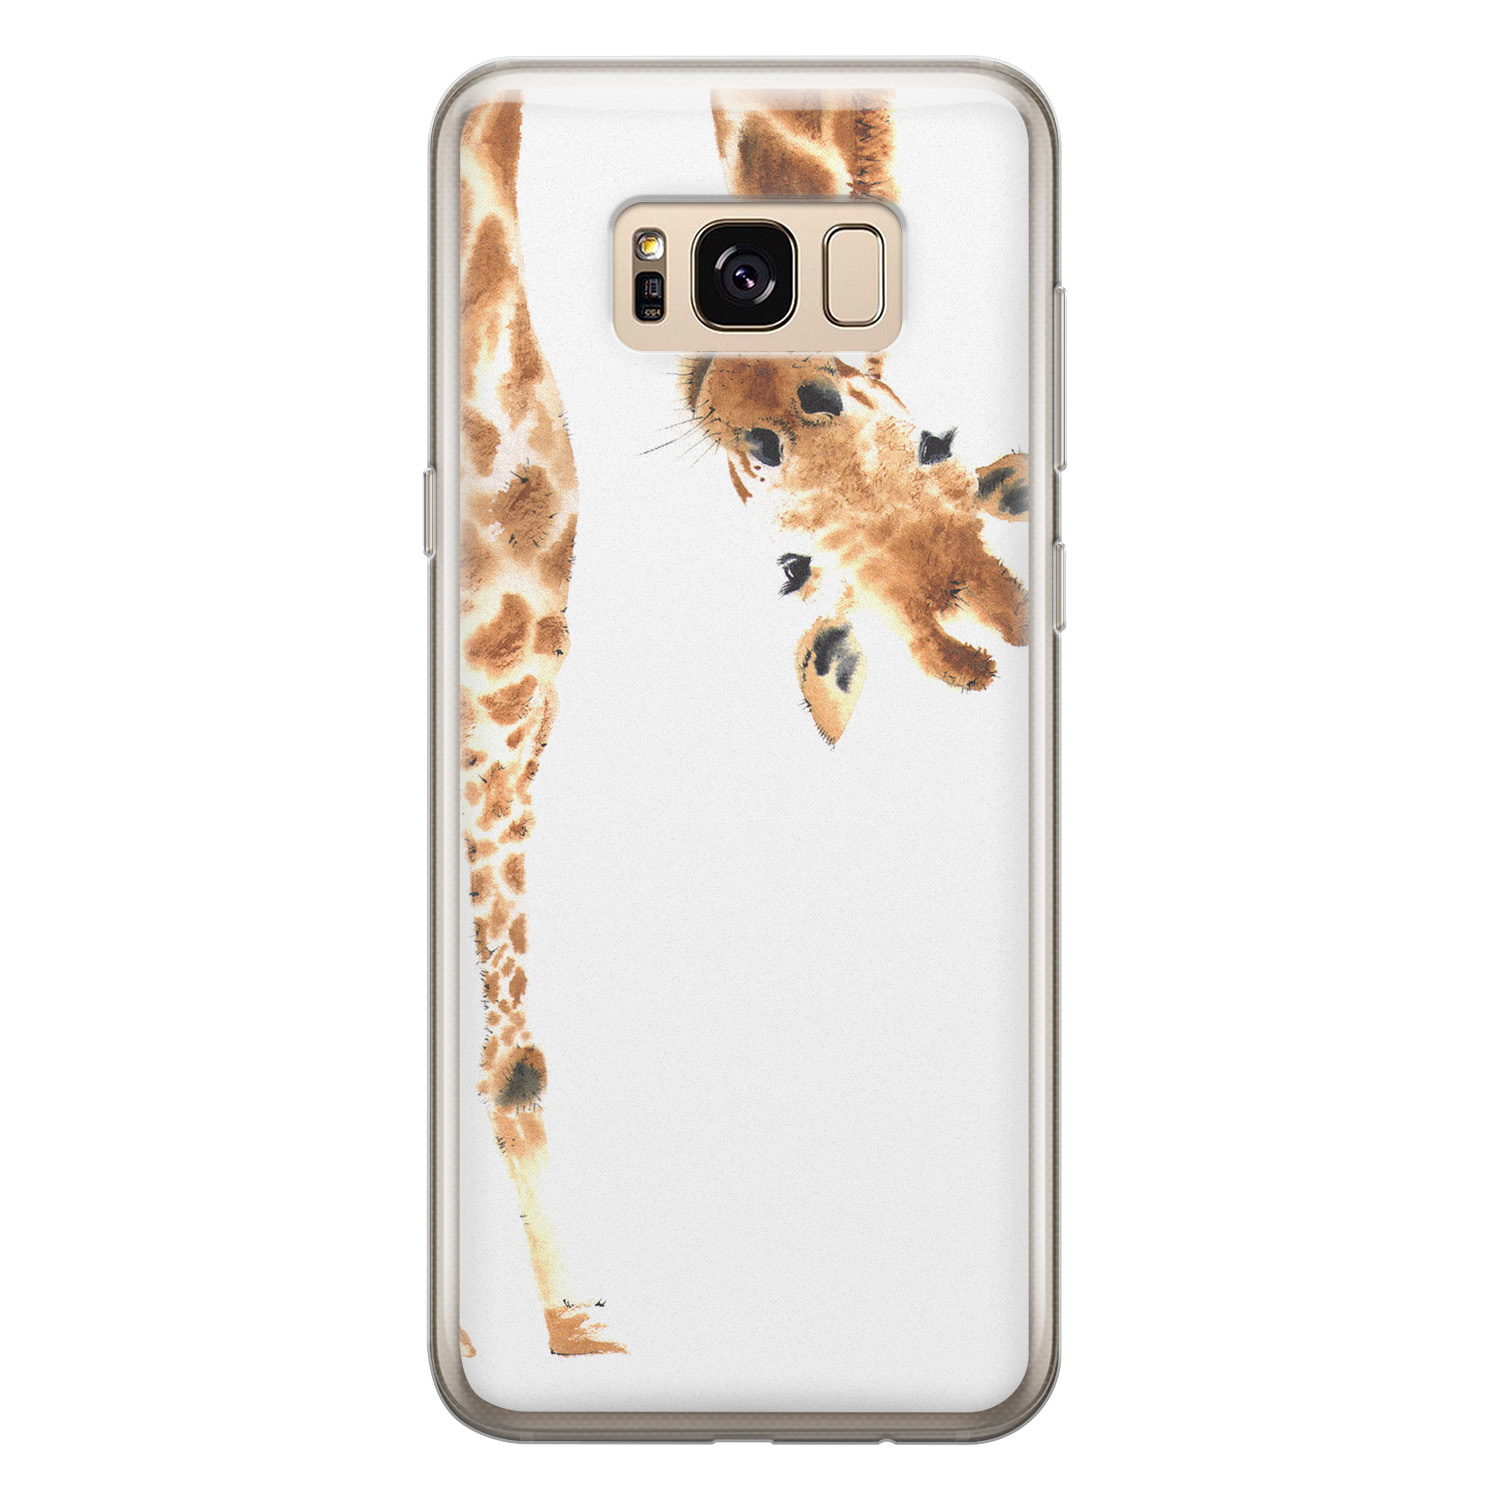 Leuke Telefoonhoesjes Samsung Galaxy S8 siliconen hoesje - Giraffe peekaboo